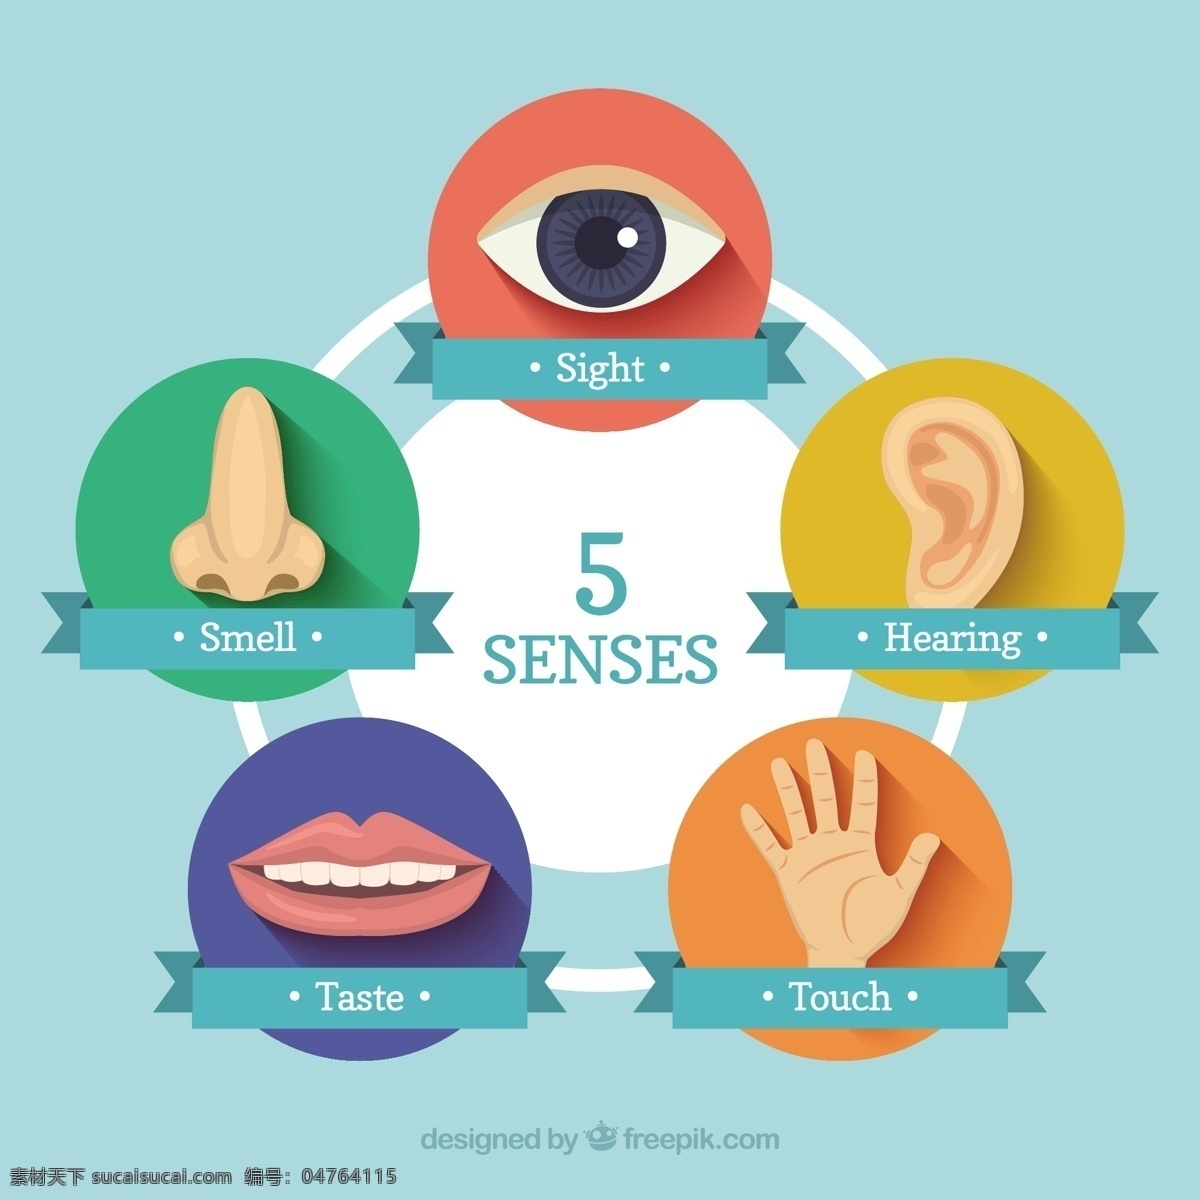 五 种 感官 图标 图示 手 眼睛 人 口腔 牙齿 耳朵 人体 手图示 触摸 噪音 手指 嗅觉 零件 听觉 味觉 身体部位 青色 天蓝色